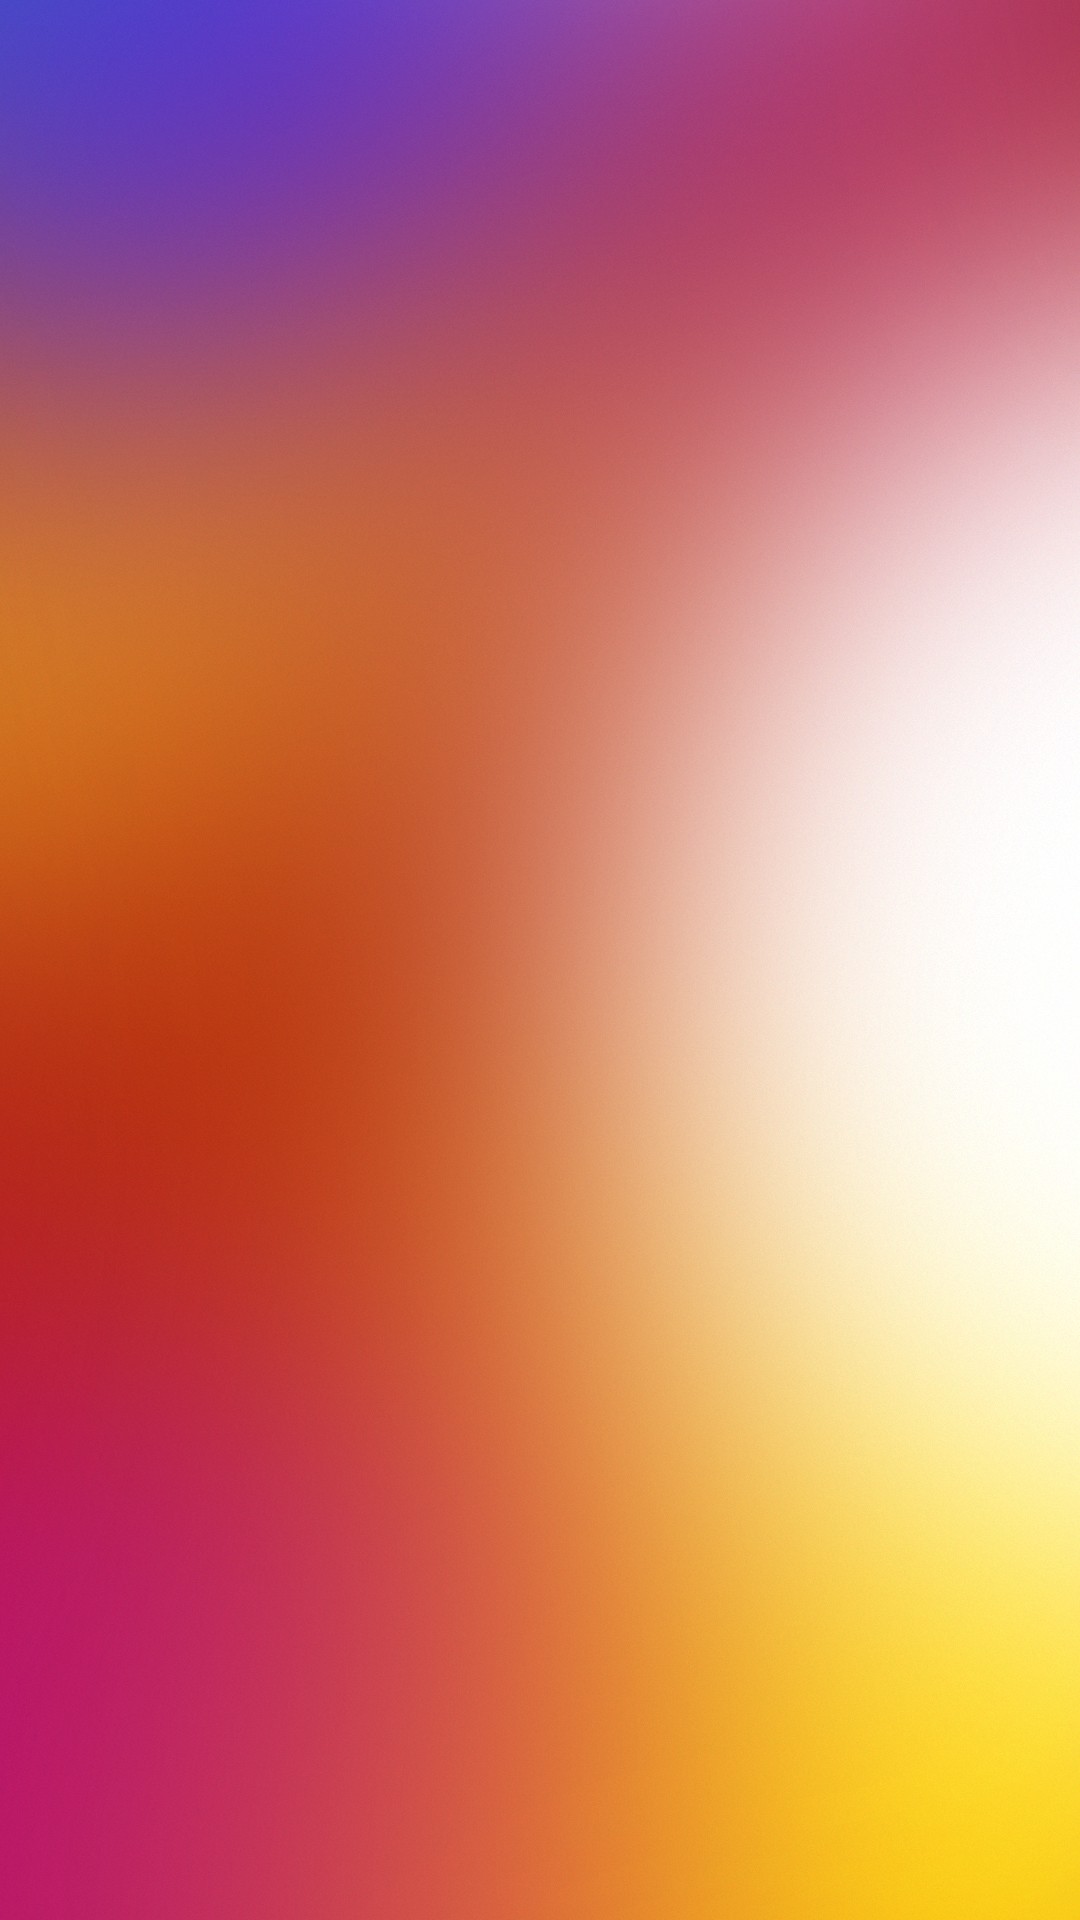 lenovo k5 note wallpaper hd,himmel,orange,rosa,rot,gelb